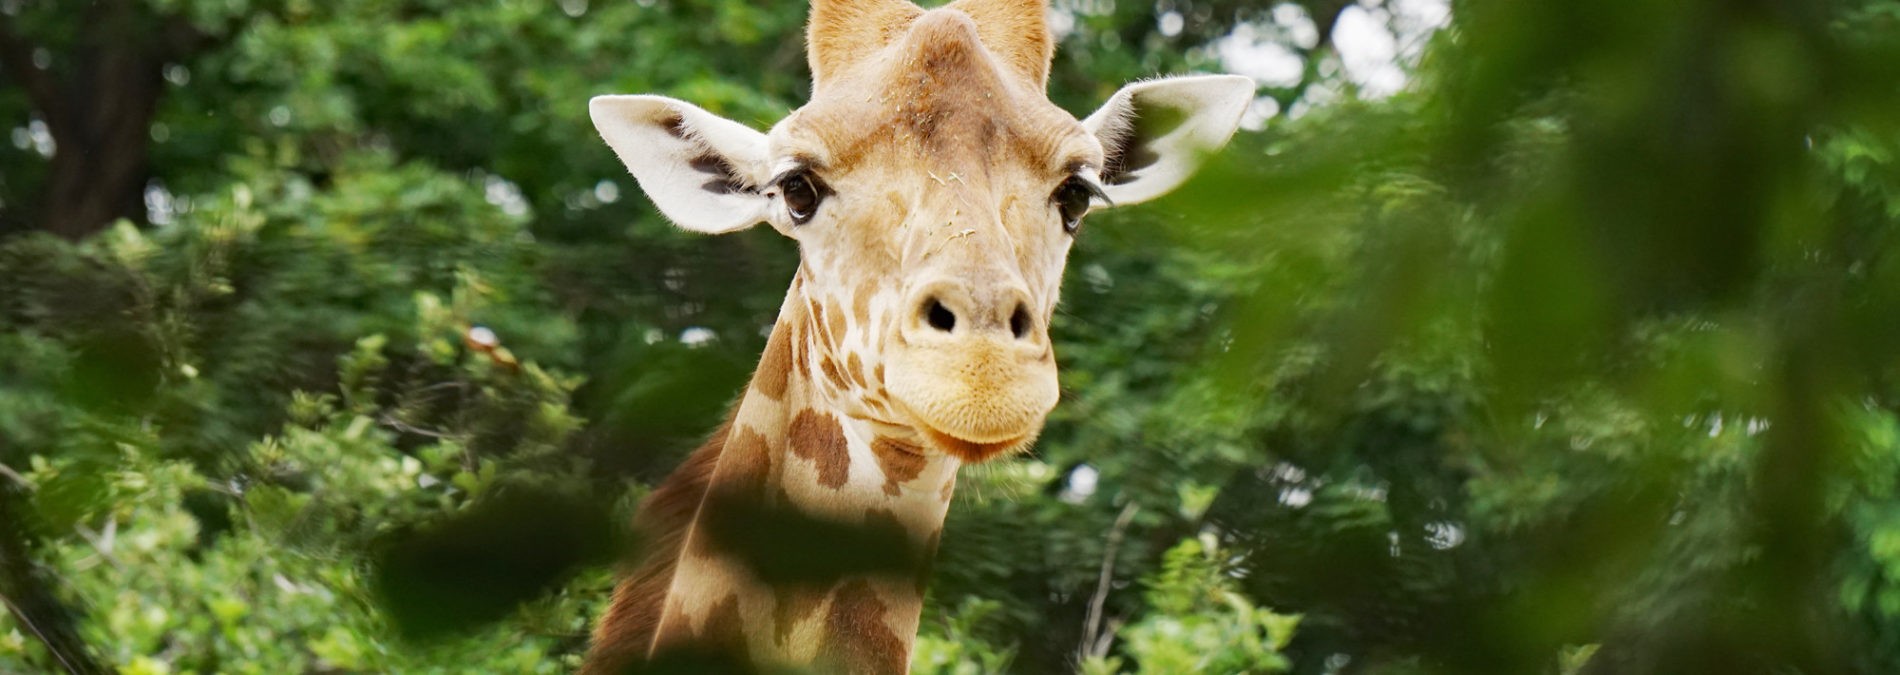 Kordofan-Giraffe